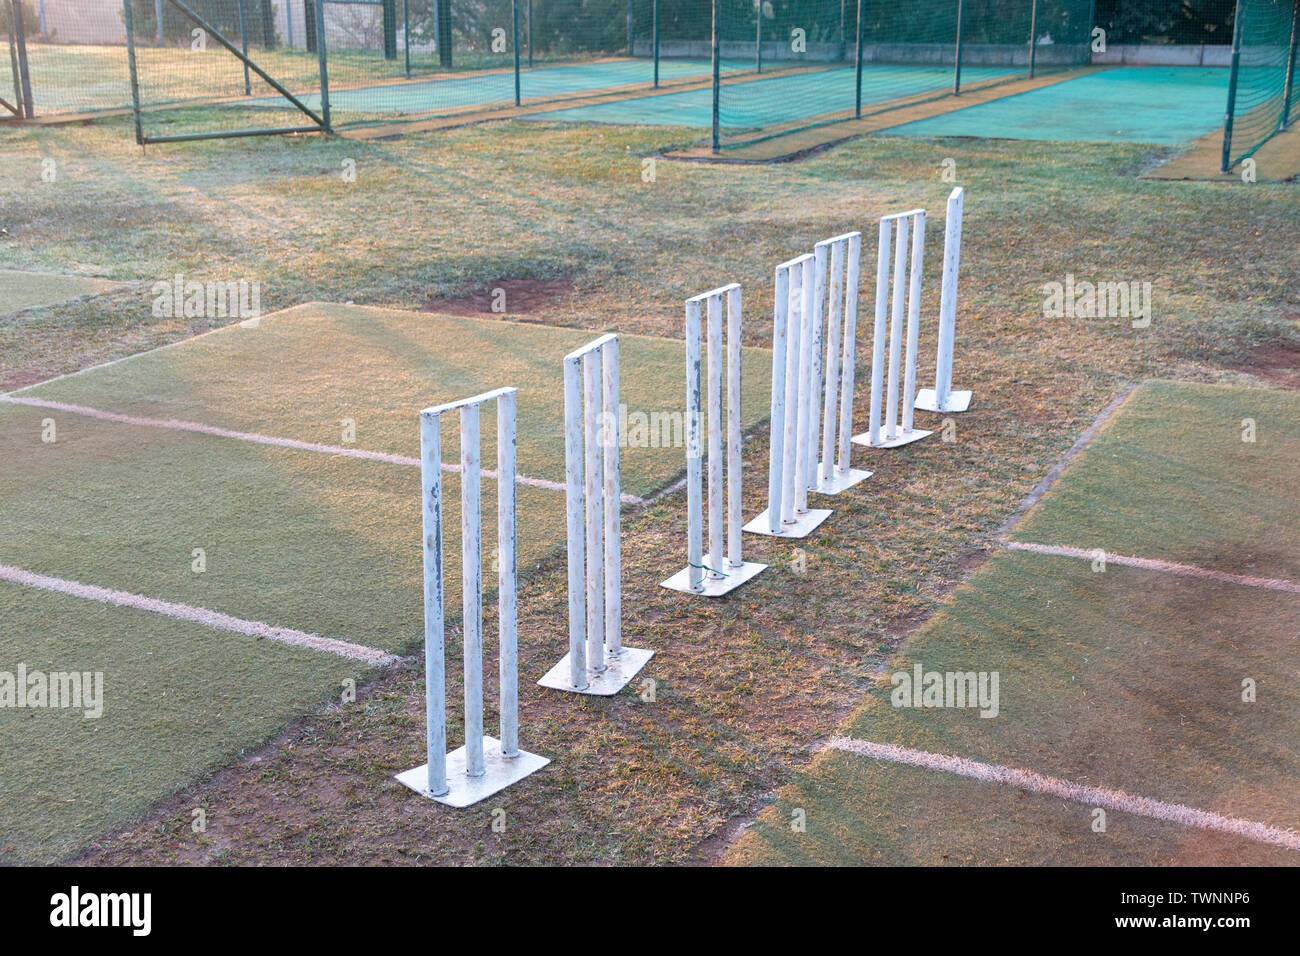 Aus der Nähe zu sehen. Sieben weiße Metall cricket Wickets, die alle in einer Reihe auf dem Feld für die Praxis bereit Stockfoto